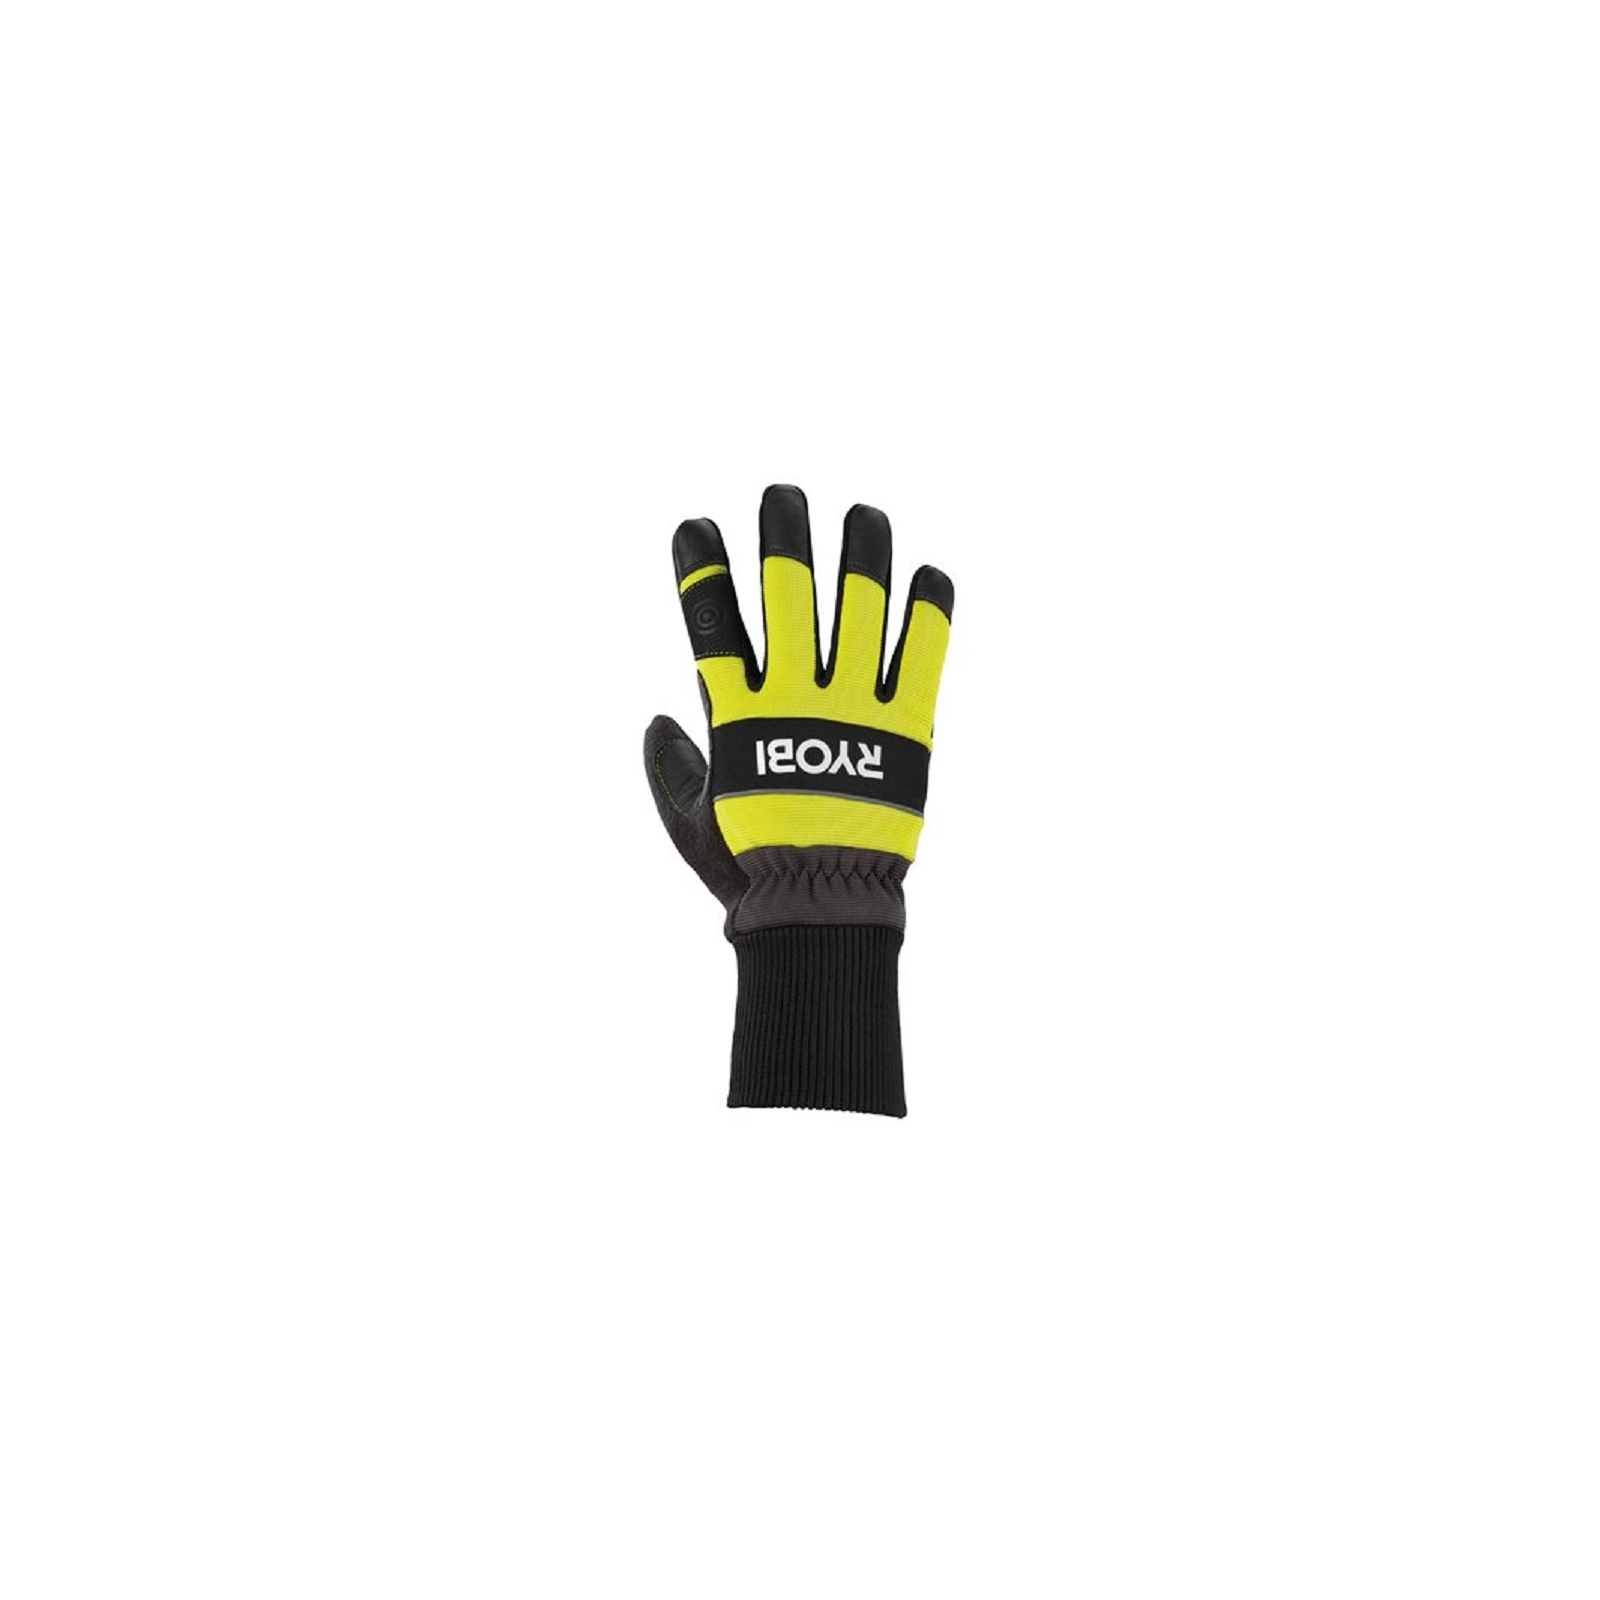 Защитные перчатки Ryobi RAC258XL для работы с цепной пилой влагозащита, р. XL (5132005712) изображение 2